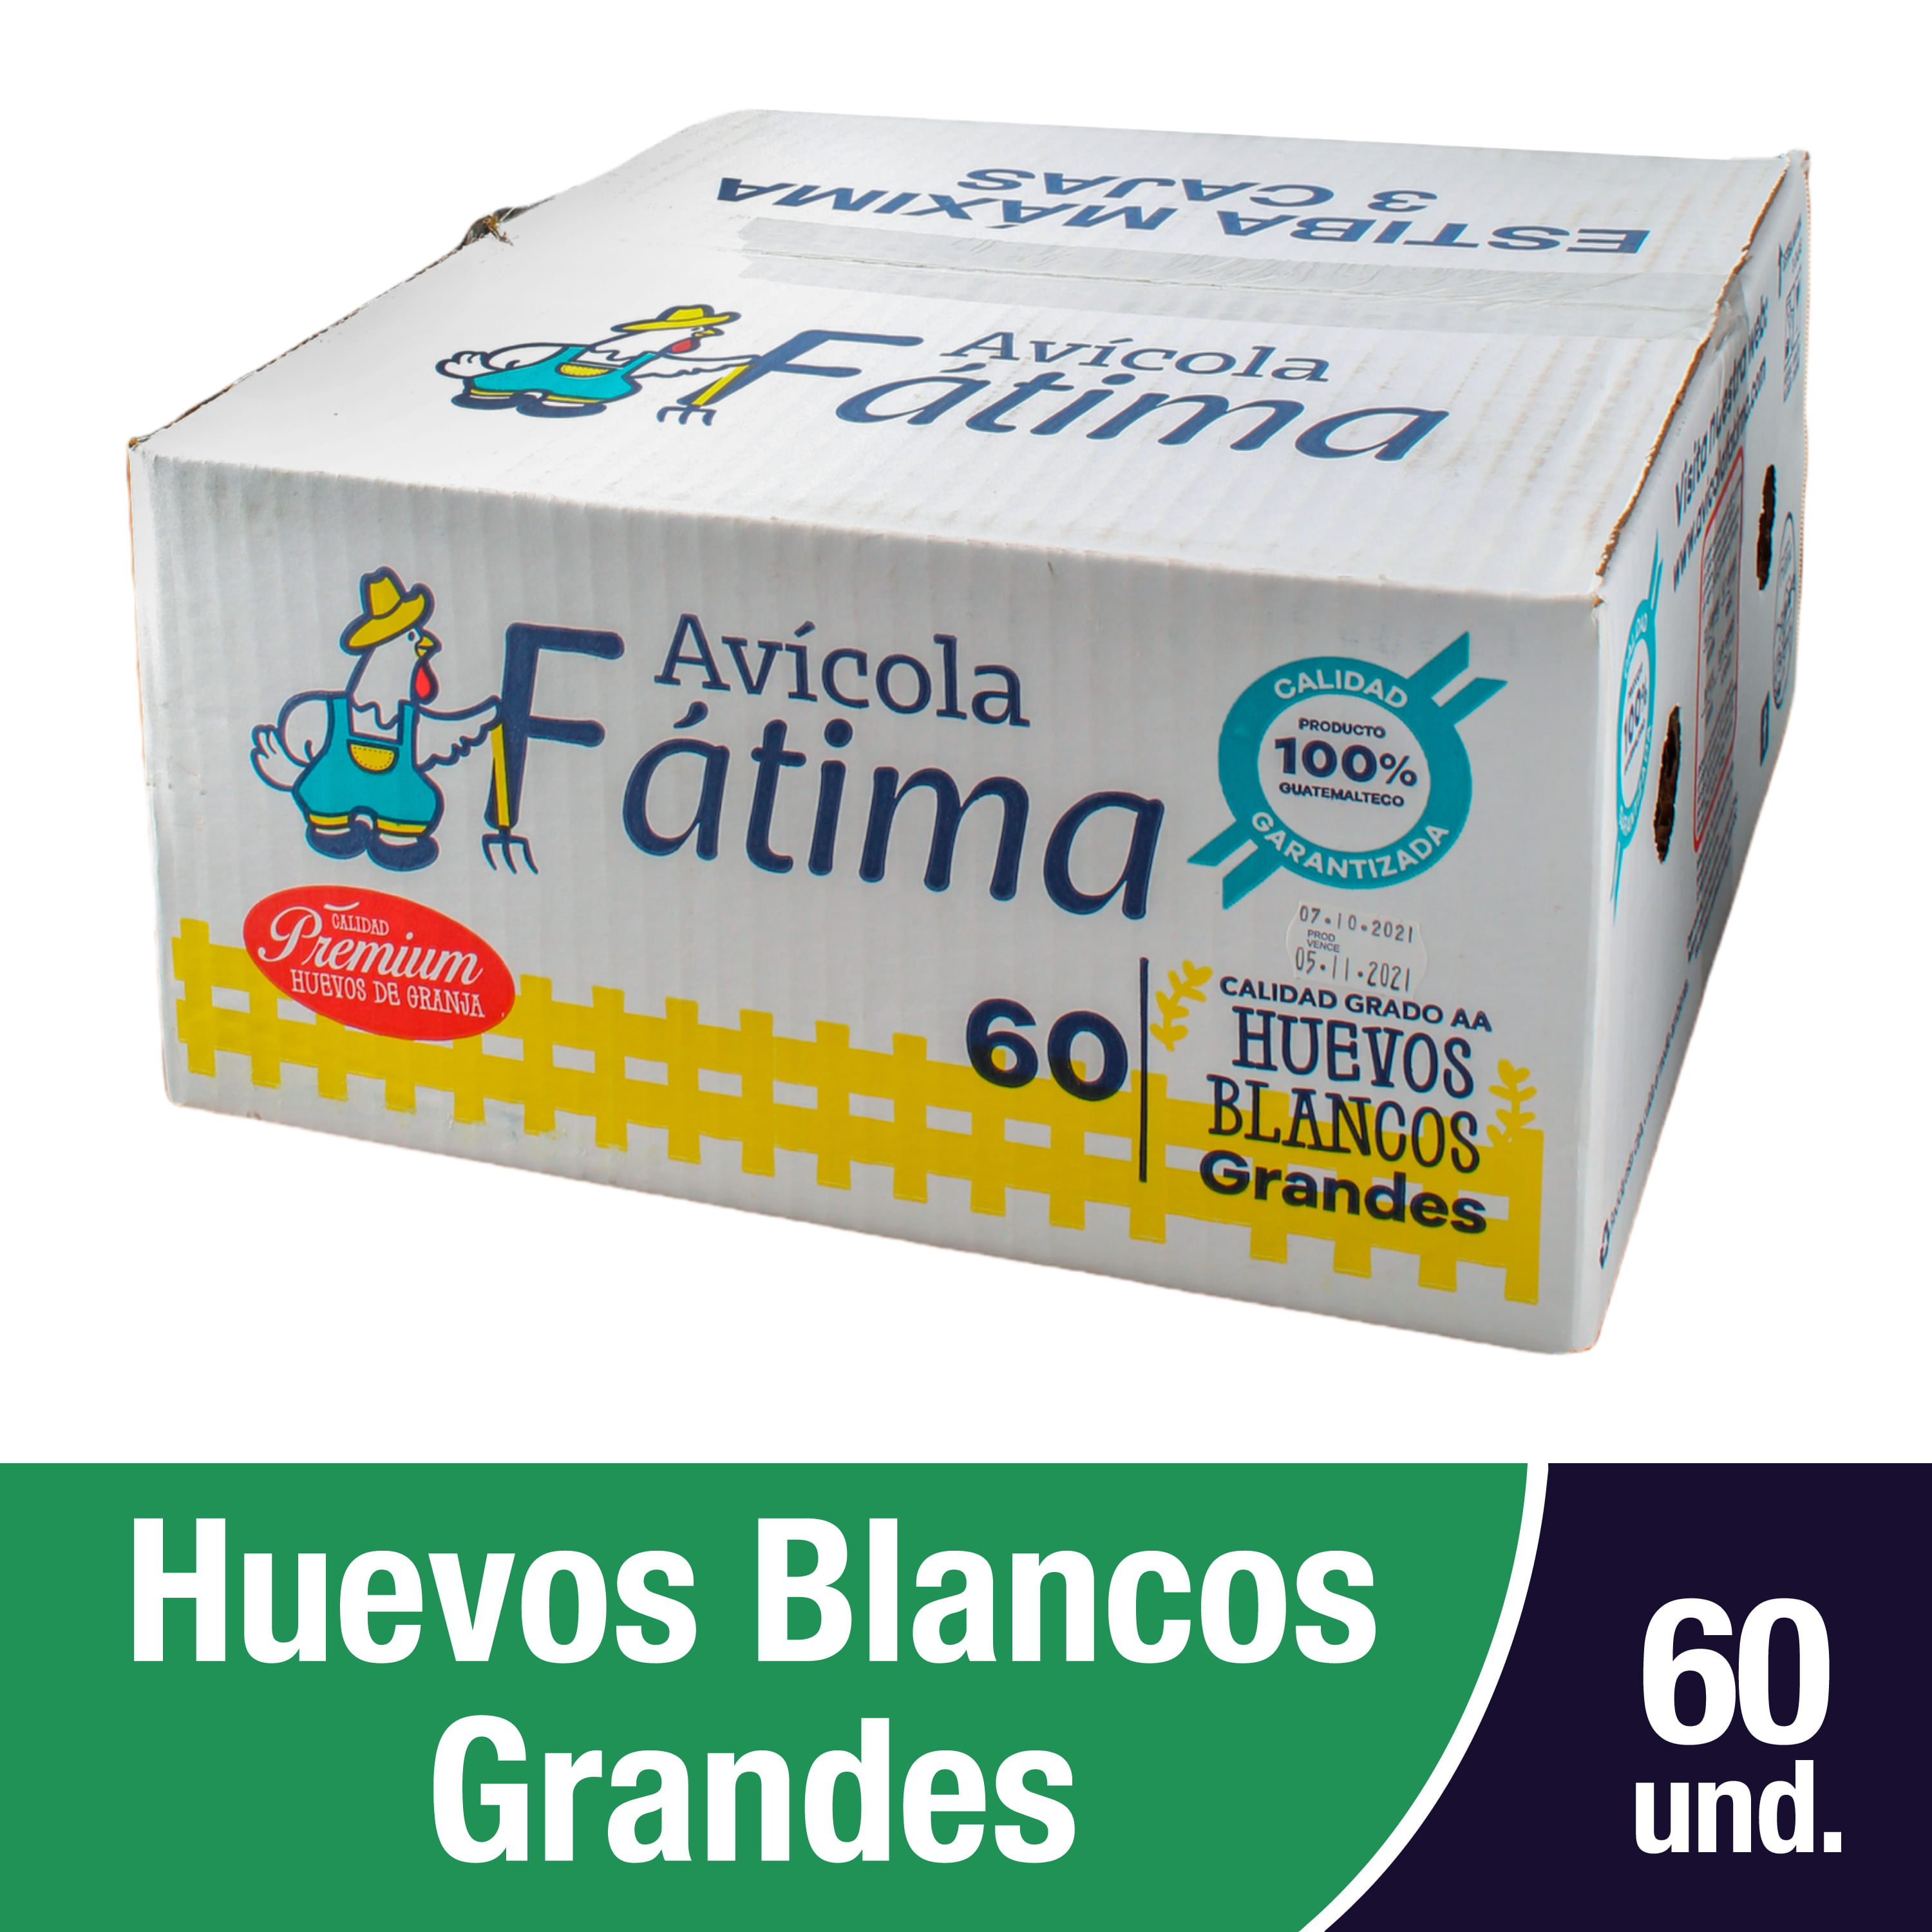 Compositor Pogo stick jump Desfavorable Comprar Huevo Avicola Fatima Grande Blanco -60 unidades | Walmart Guatemala